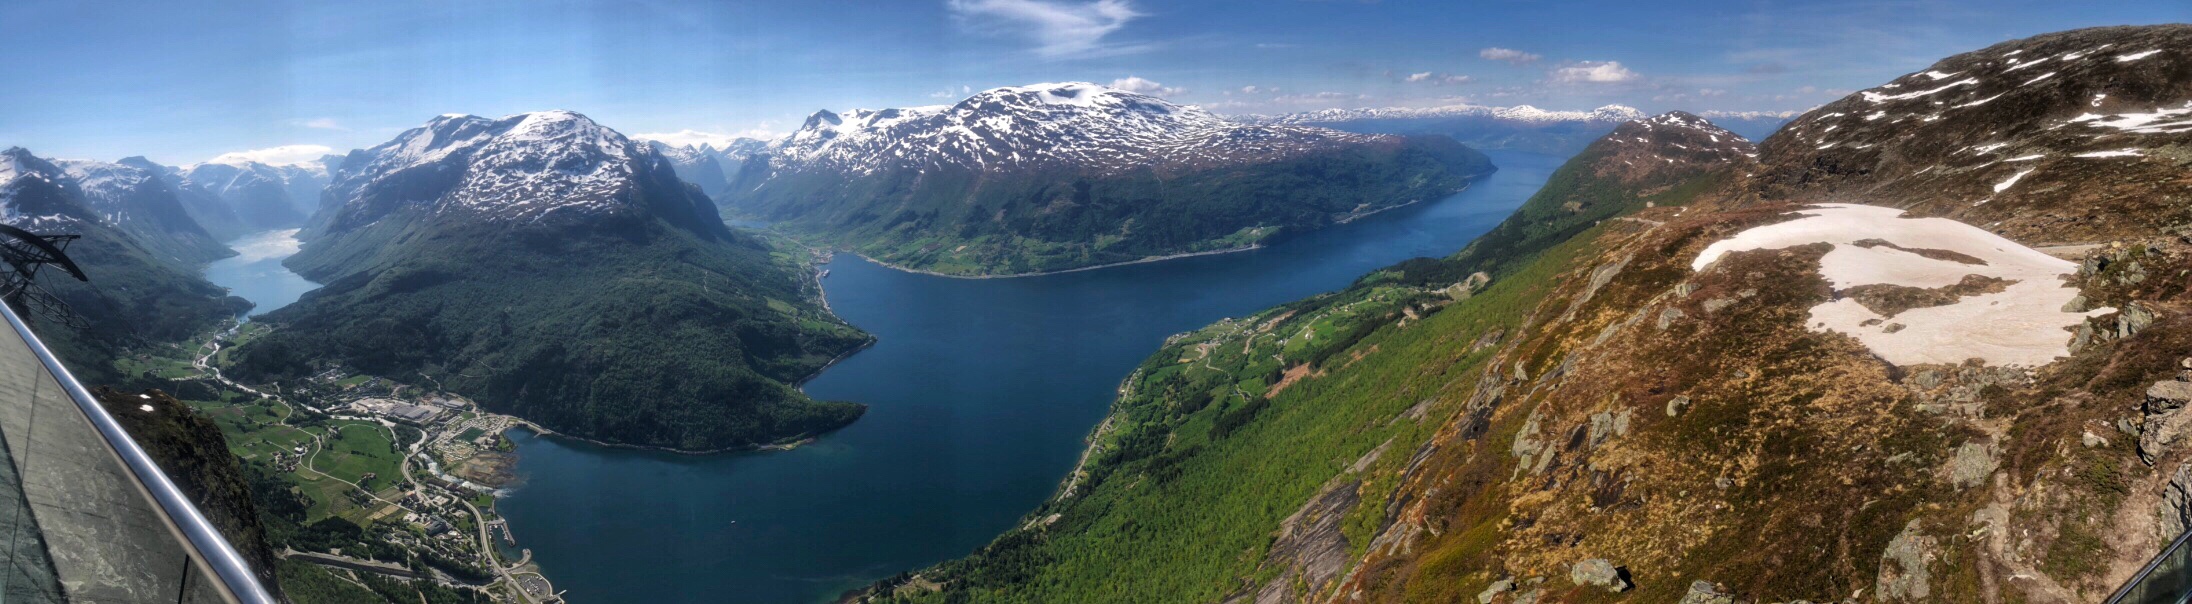 Norway Panorama